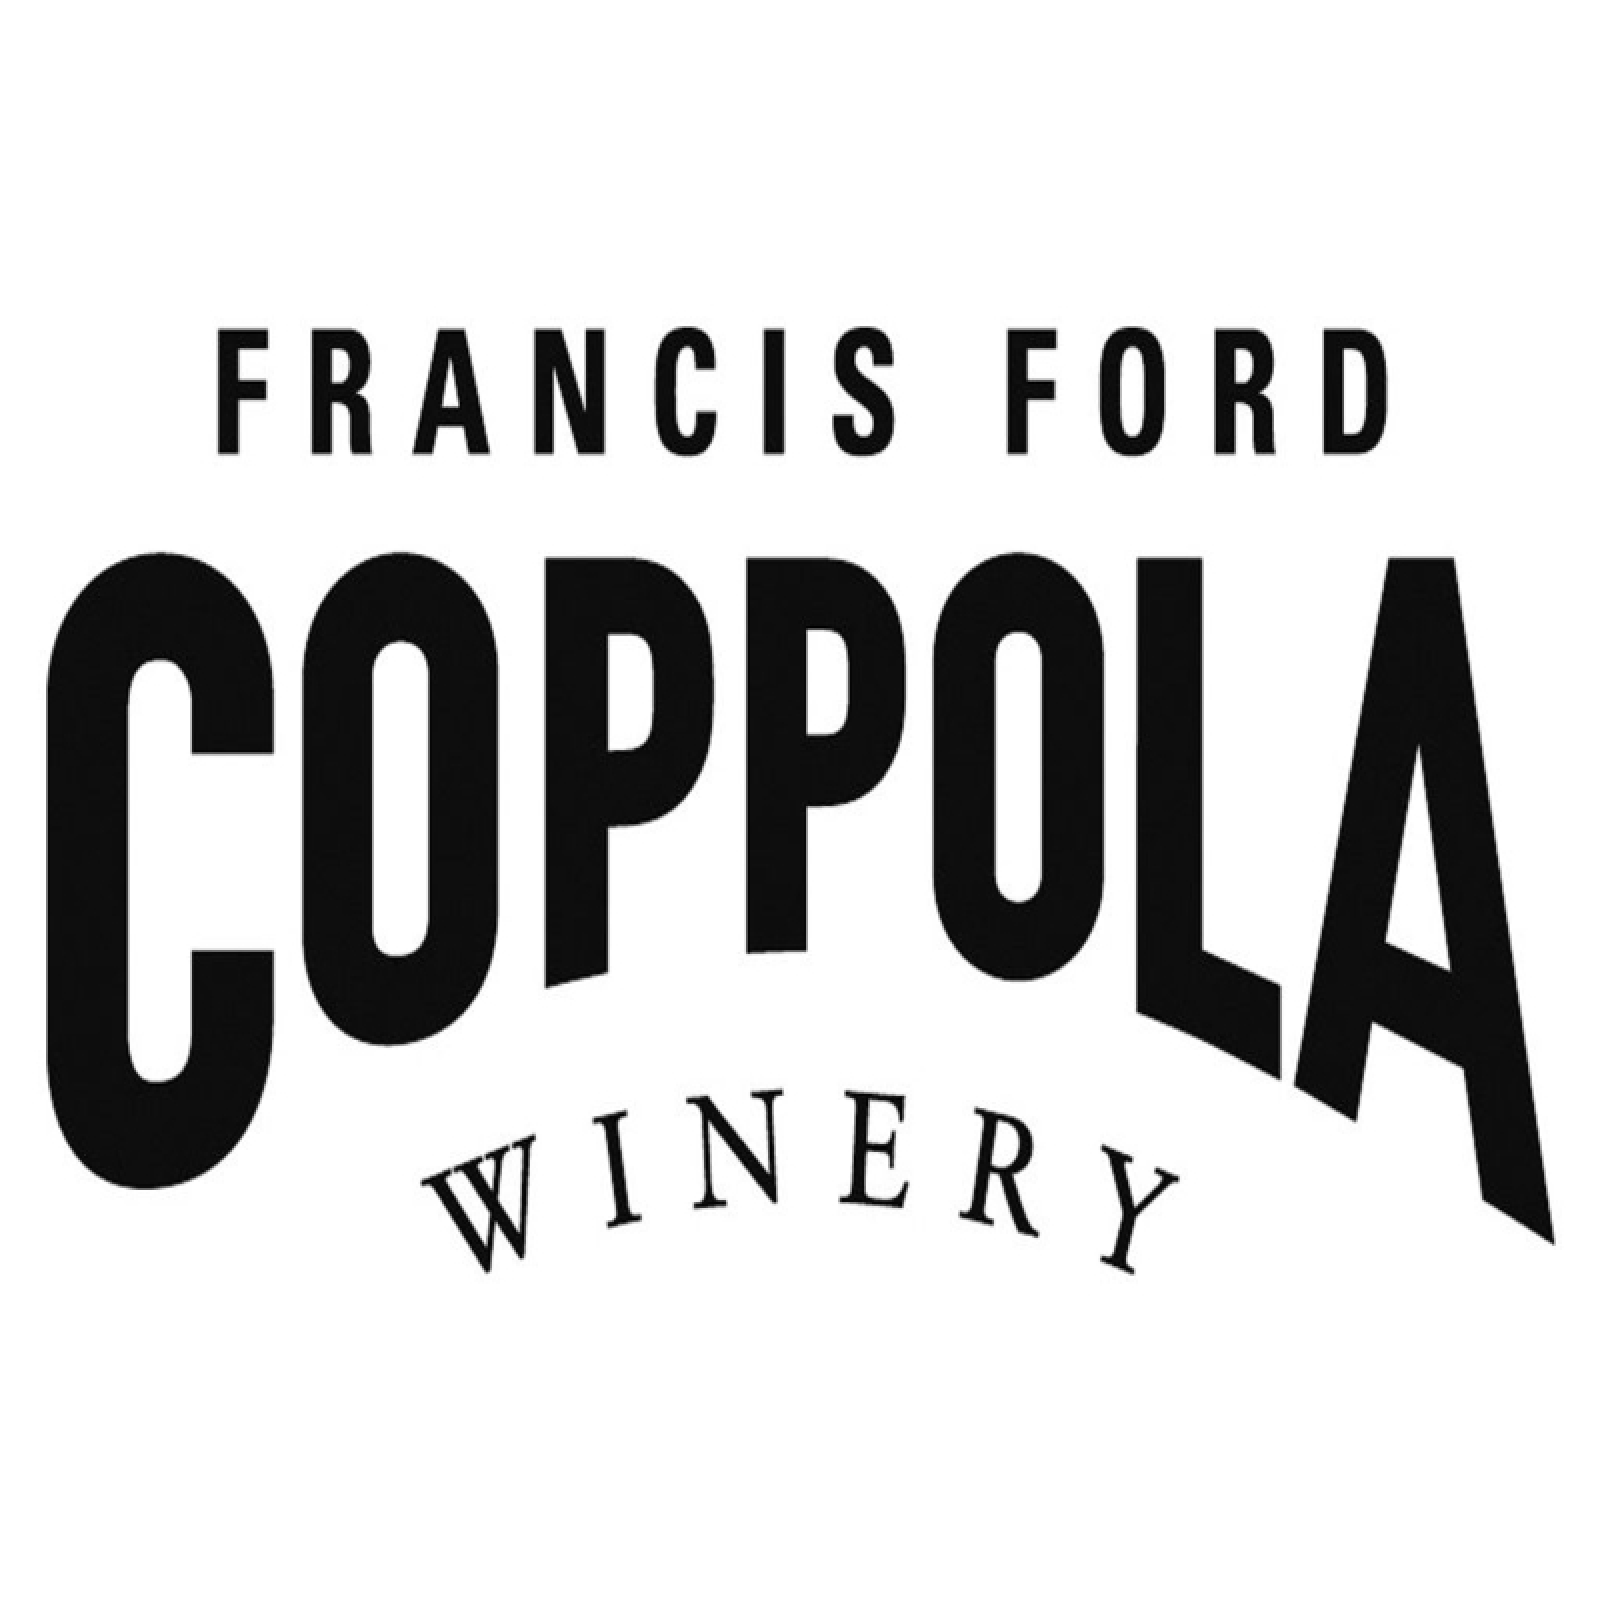 Francis Ford Coppola Winery Logo Photo